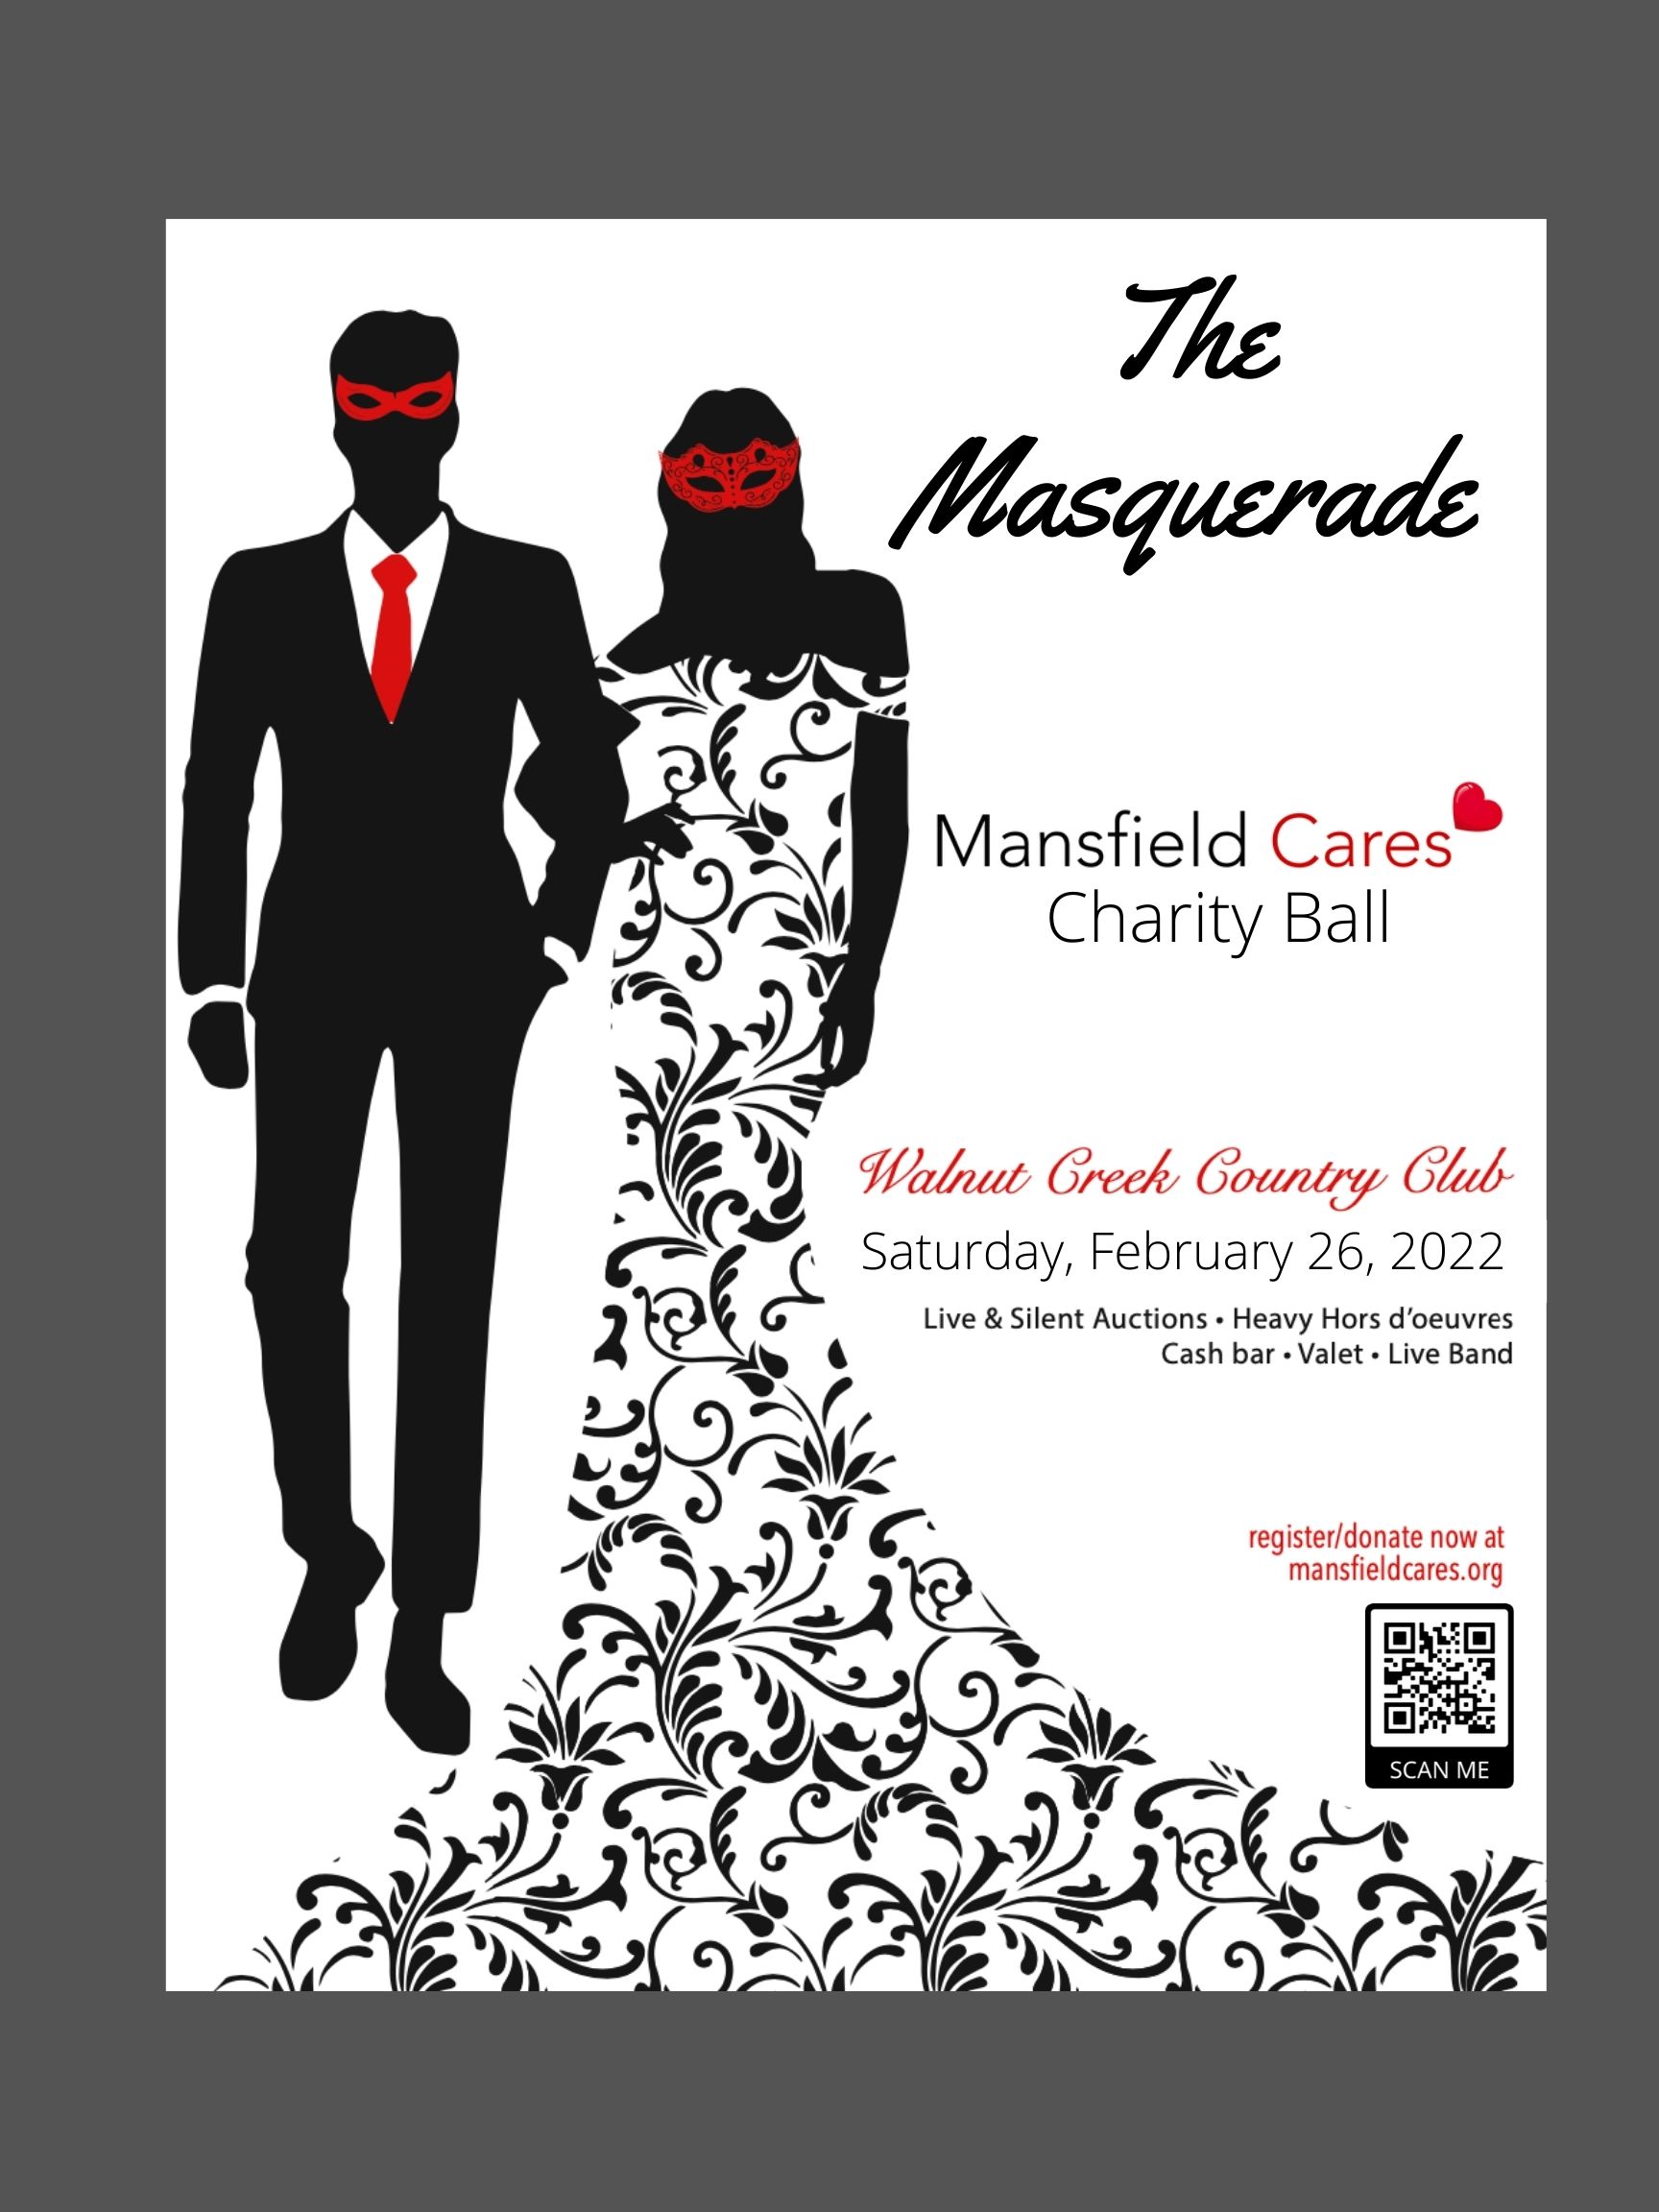 Mansfield Cares plans masquerade ball